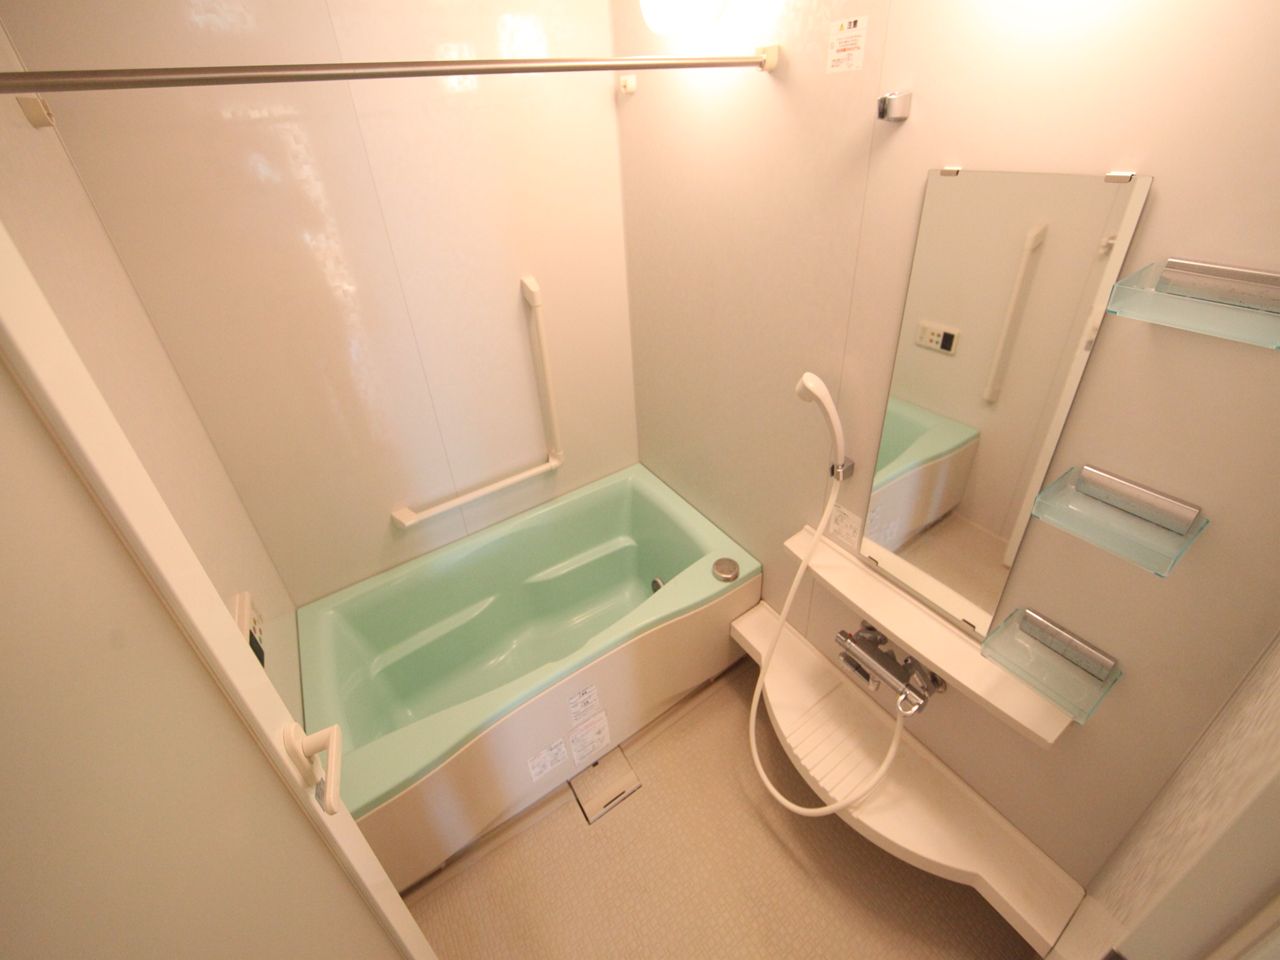 Bath. With reheating Bathroom with heating dryer bath